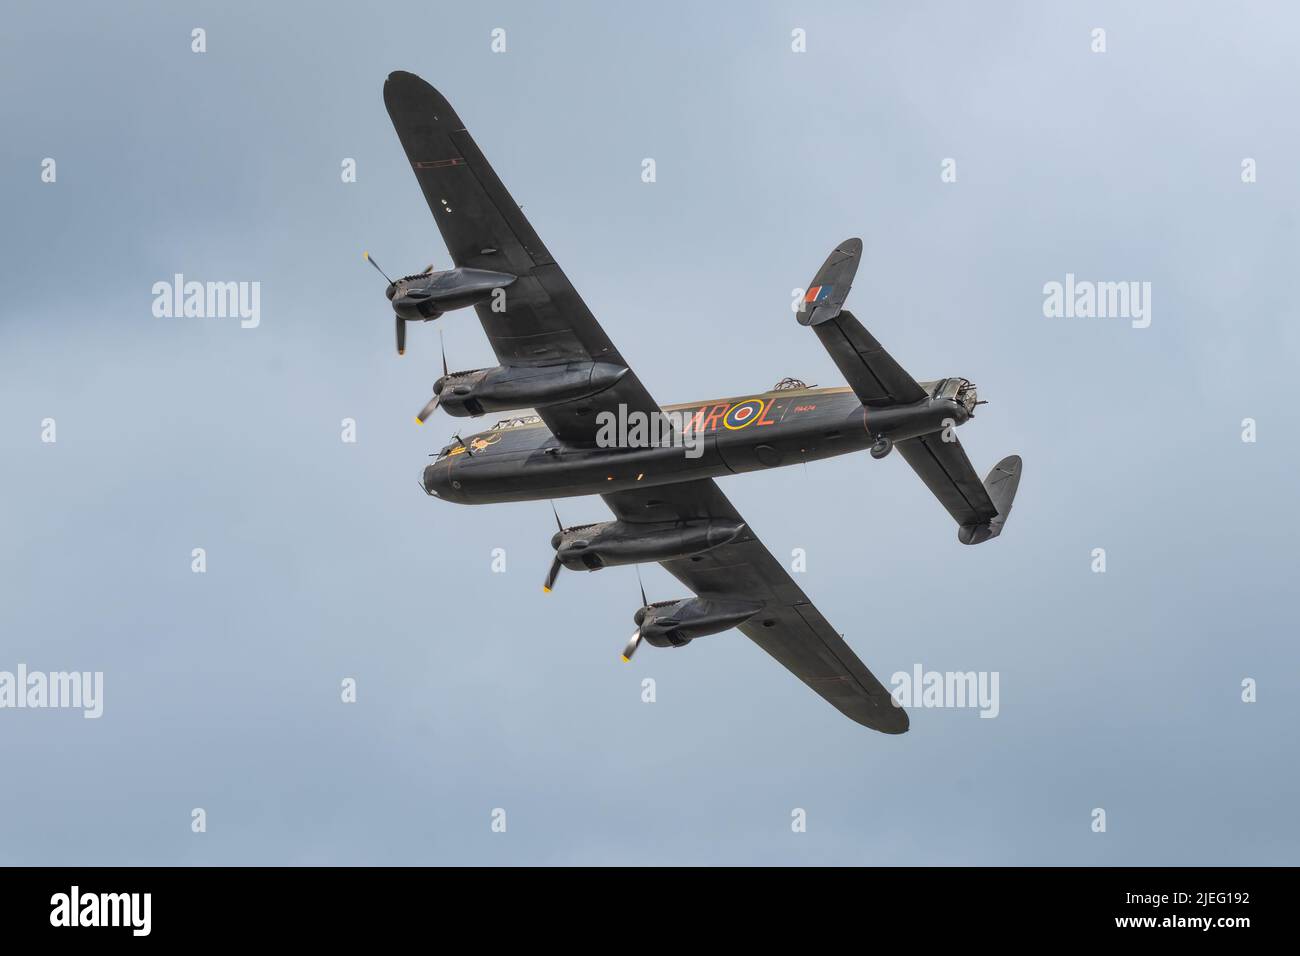 Ein Avro Lancaster Bomber im Flug. Es ist ein Bomber, der während des Zweiten Weltkriegs verwendet wurde. Von unten gesehen Stockfoto